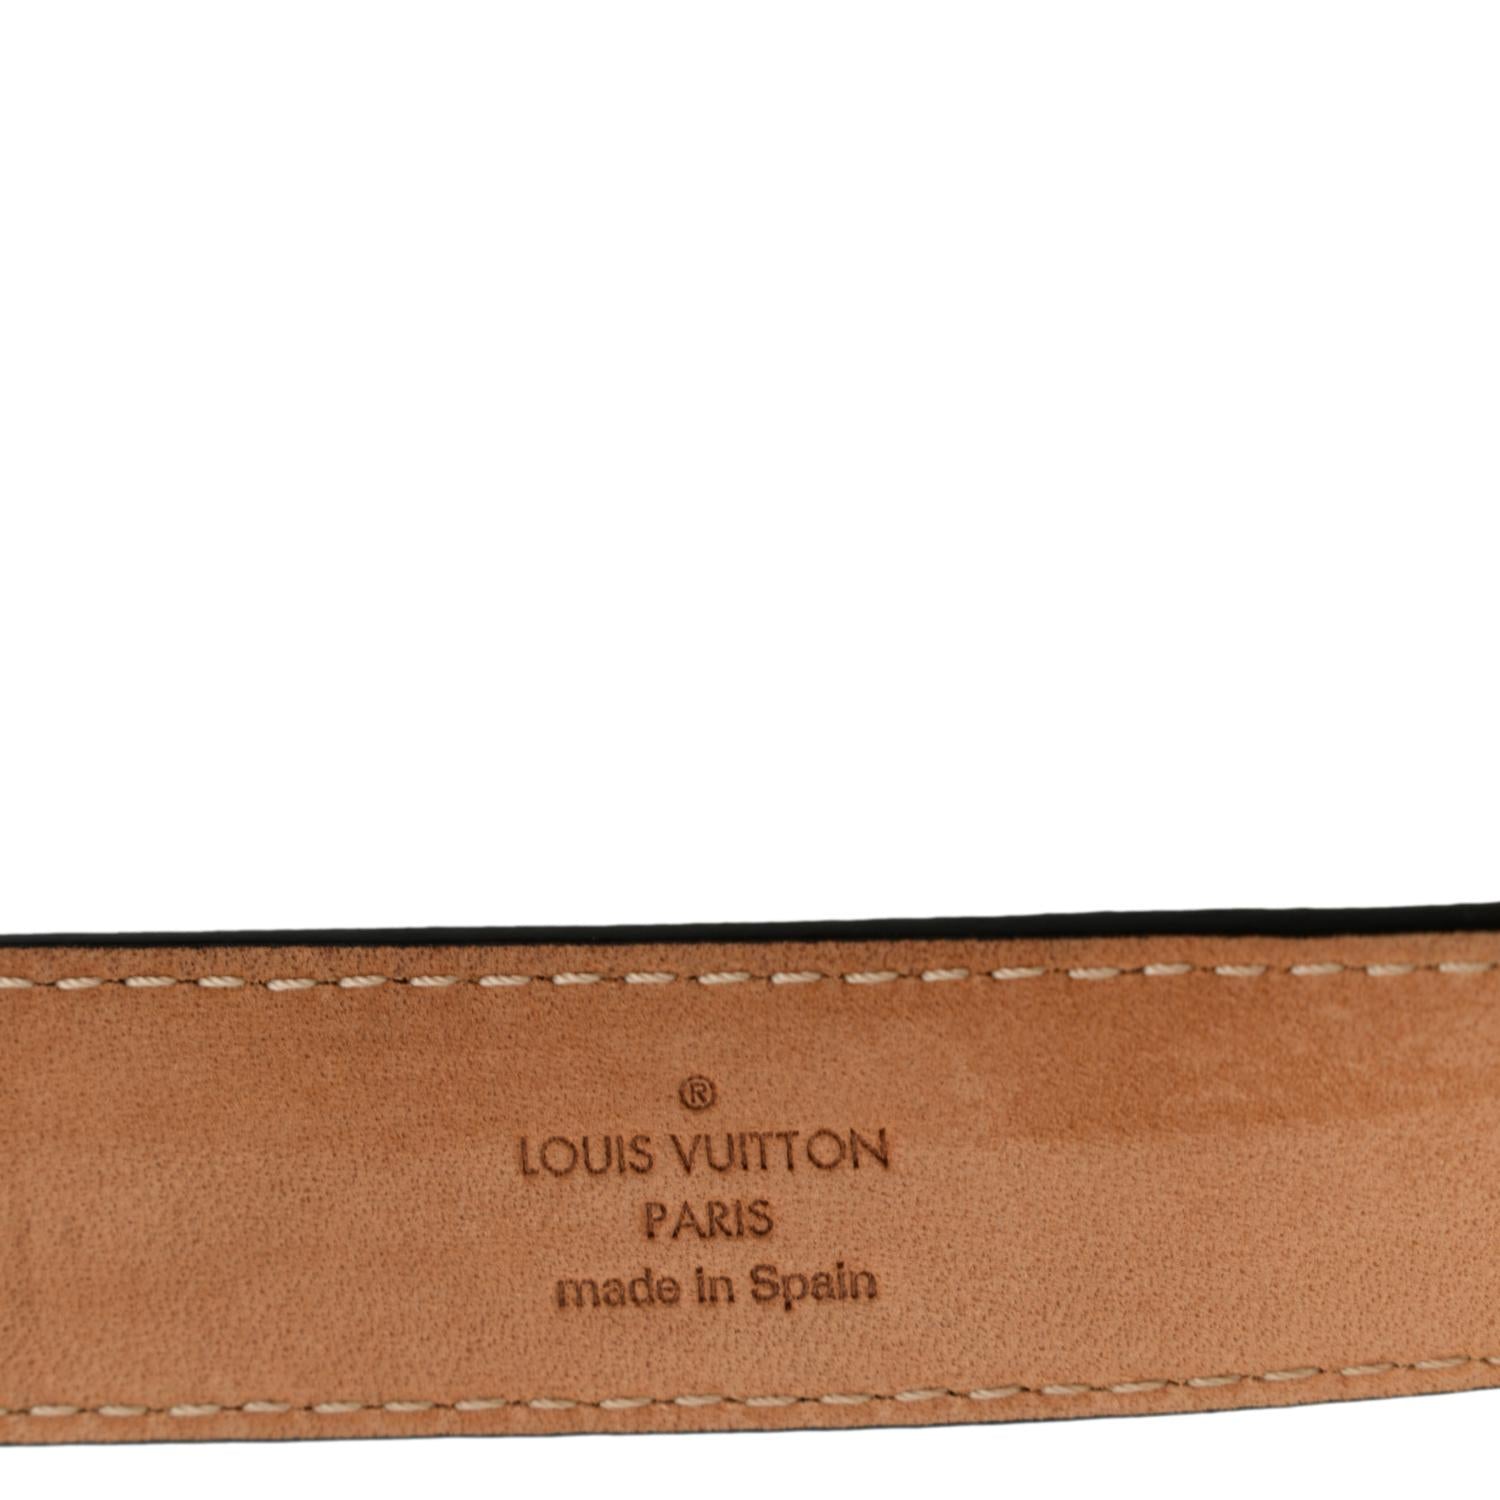 Louis Vuitton, Accessories, Mint Louis Vuitton Lv Initial 3 Mm 2 Reversible  Women Belt Size 80